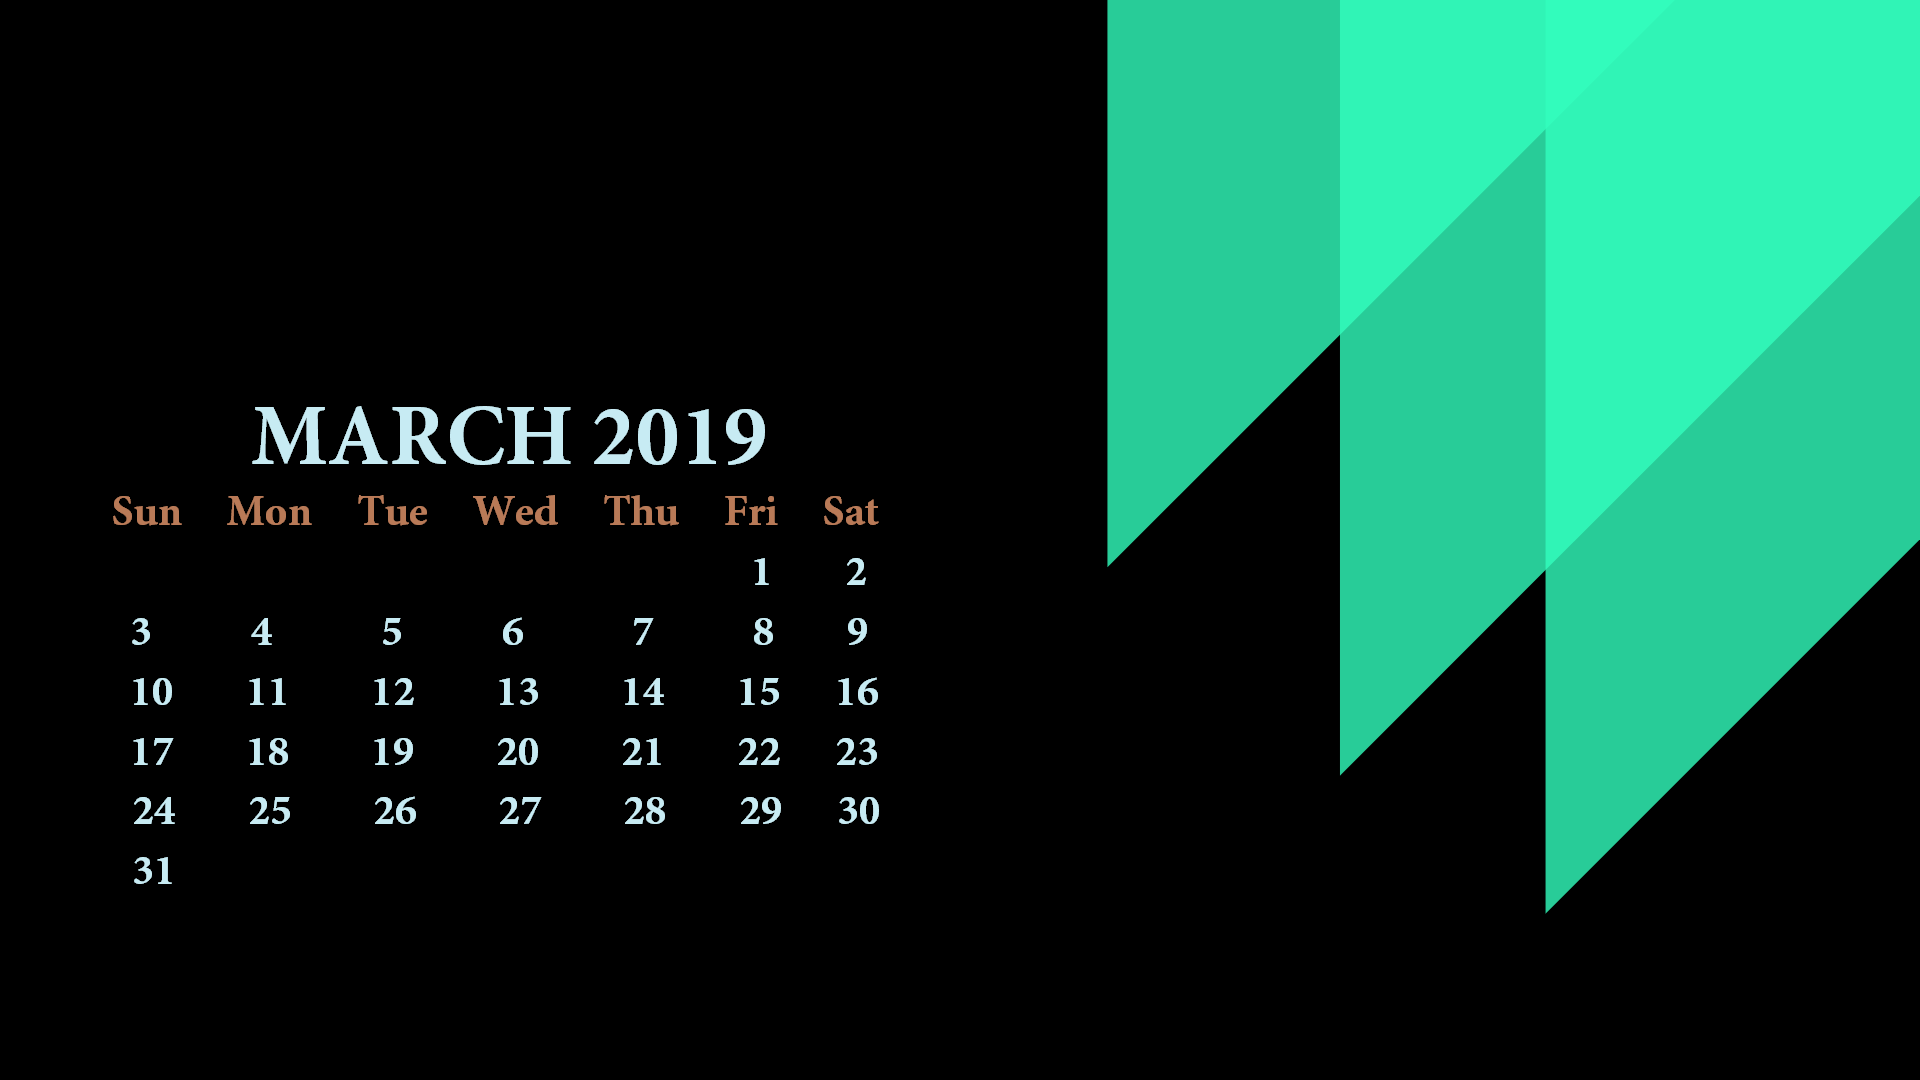 2019 March Hd Calendar Wallpaper - Desktop Calendar Wallpaper 2019 - HD Wallpaper 